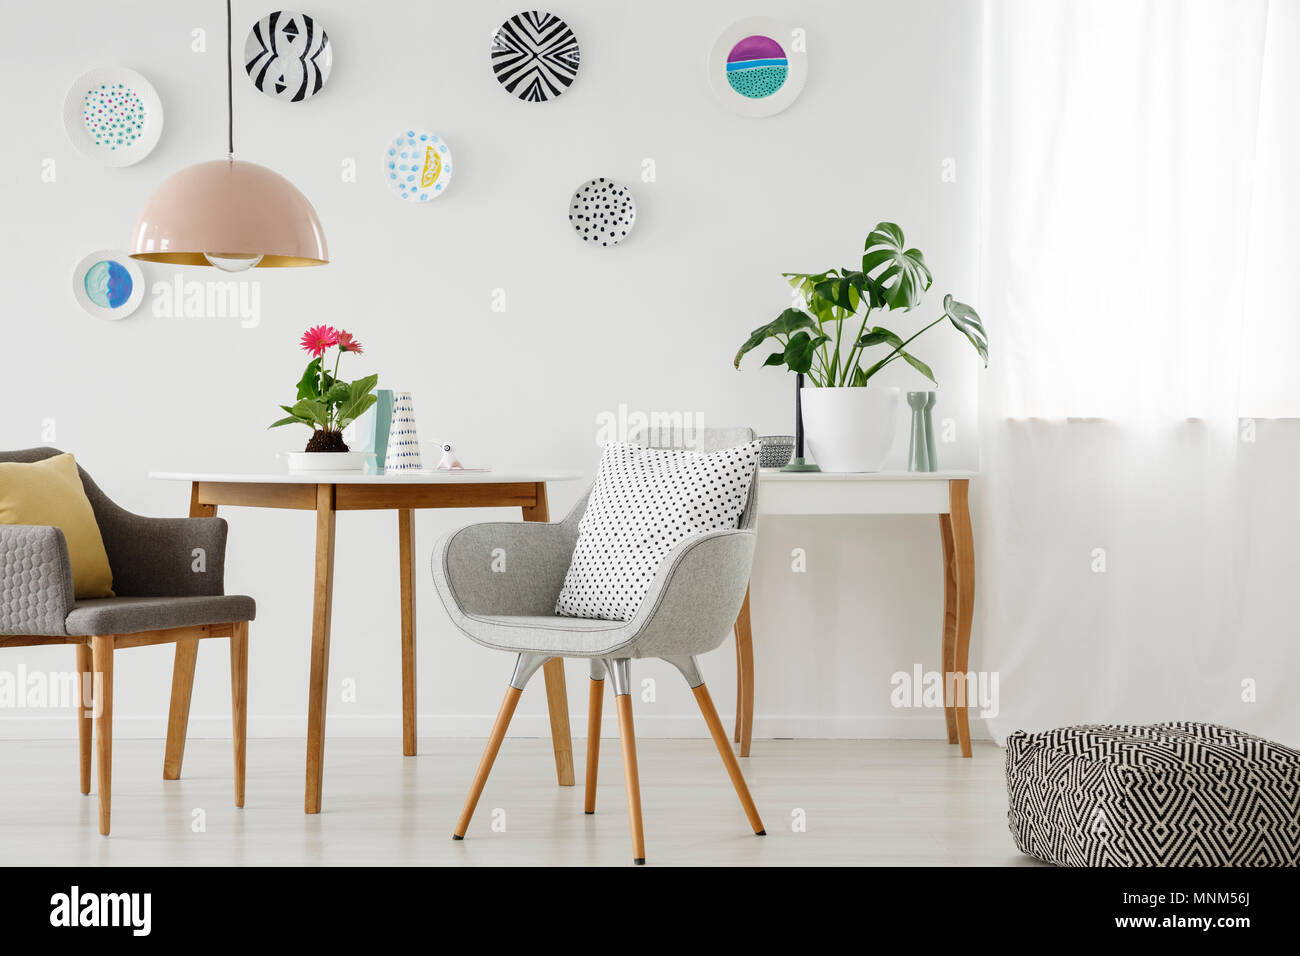 Retro Sessel, Tisch, Kronleuchter, keramische Wand Dekoration und Puff in einem hellen Wohnung Interieur Stockfoto